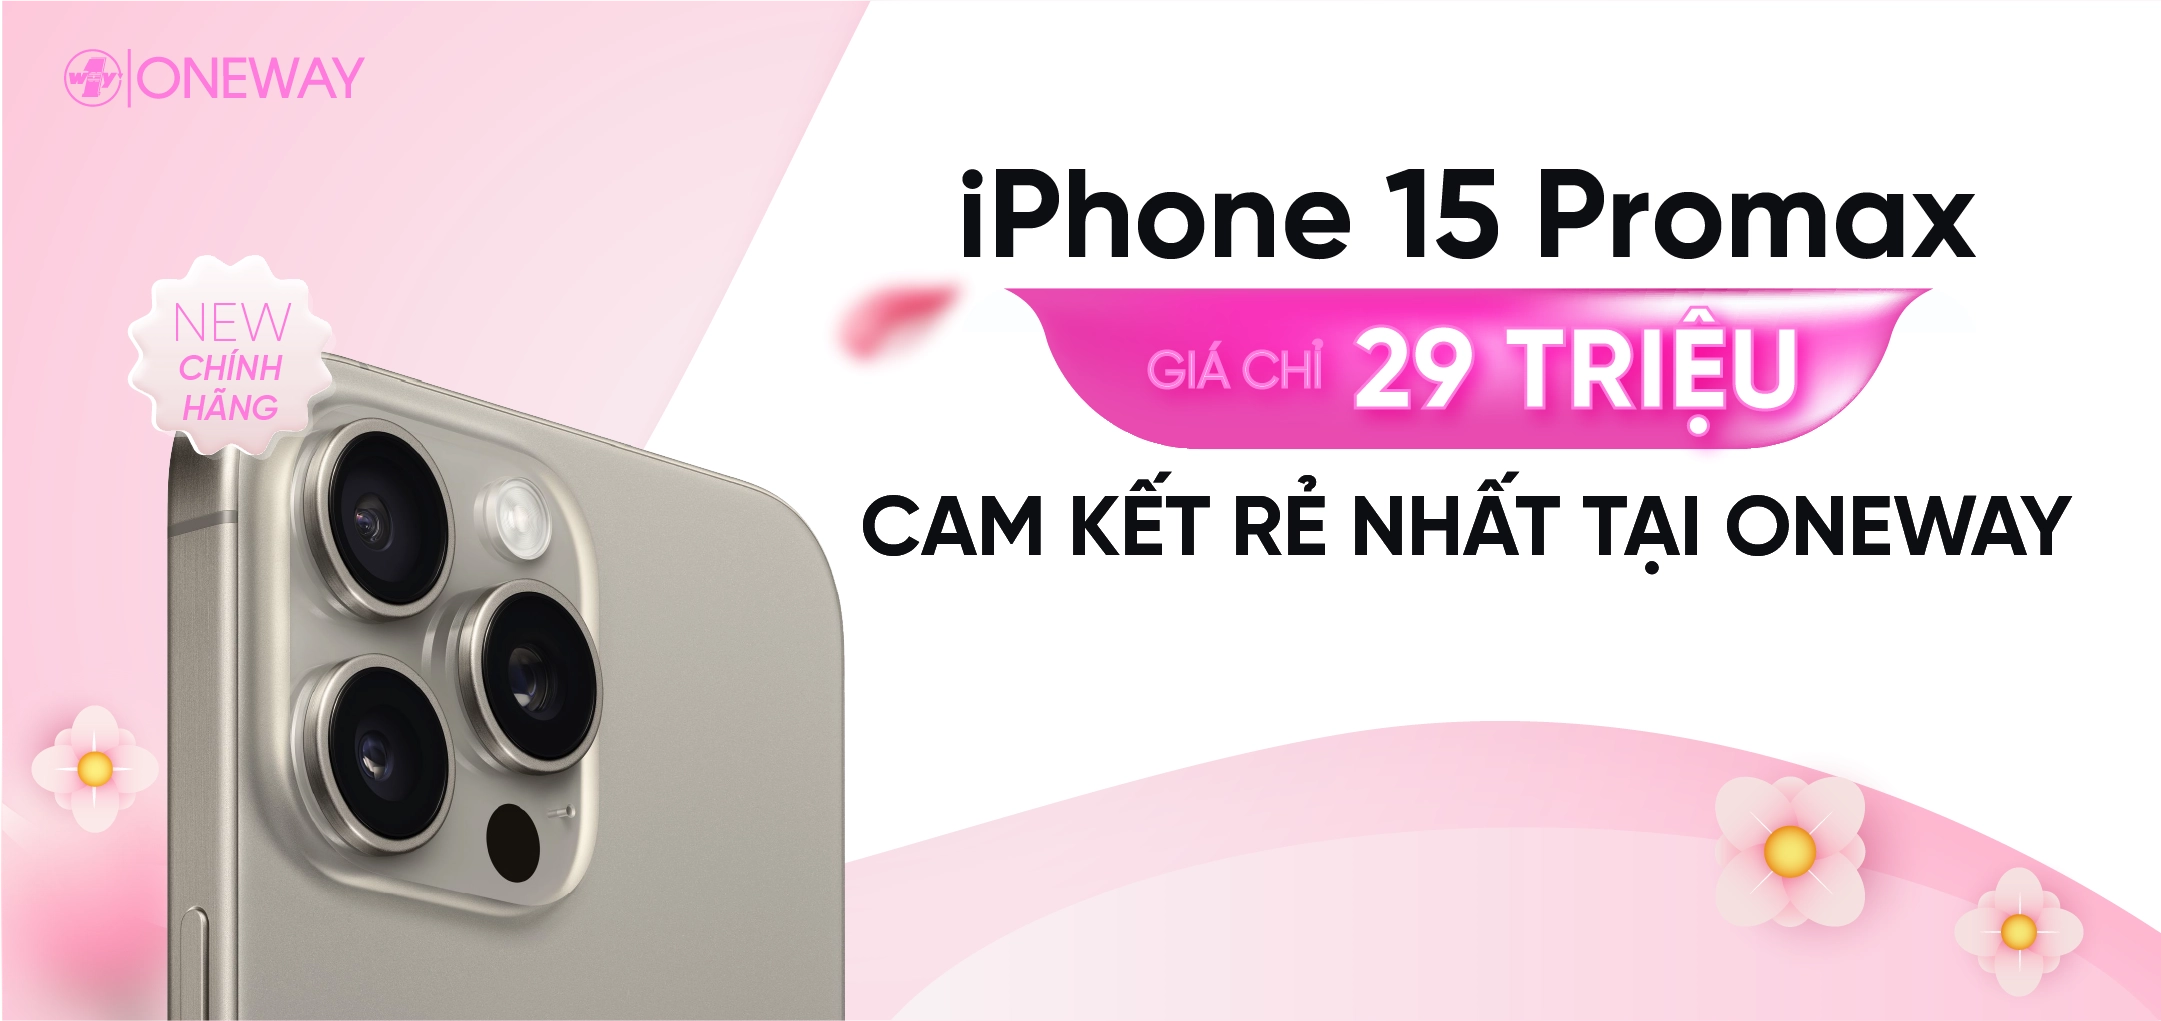 iPhone 15 Pro Max - Giá Rẻ Vô Địch